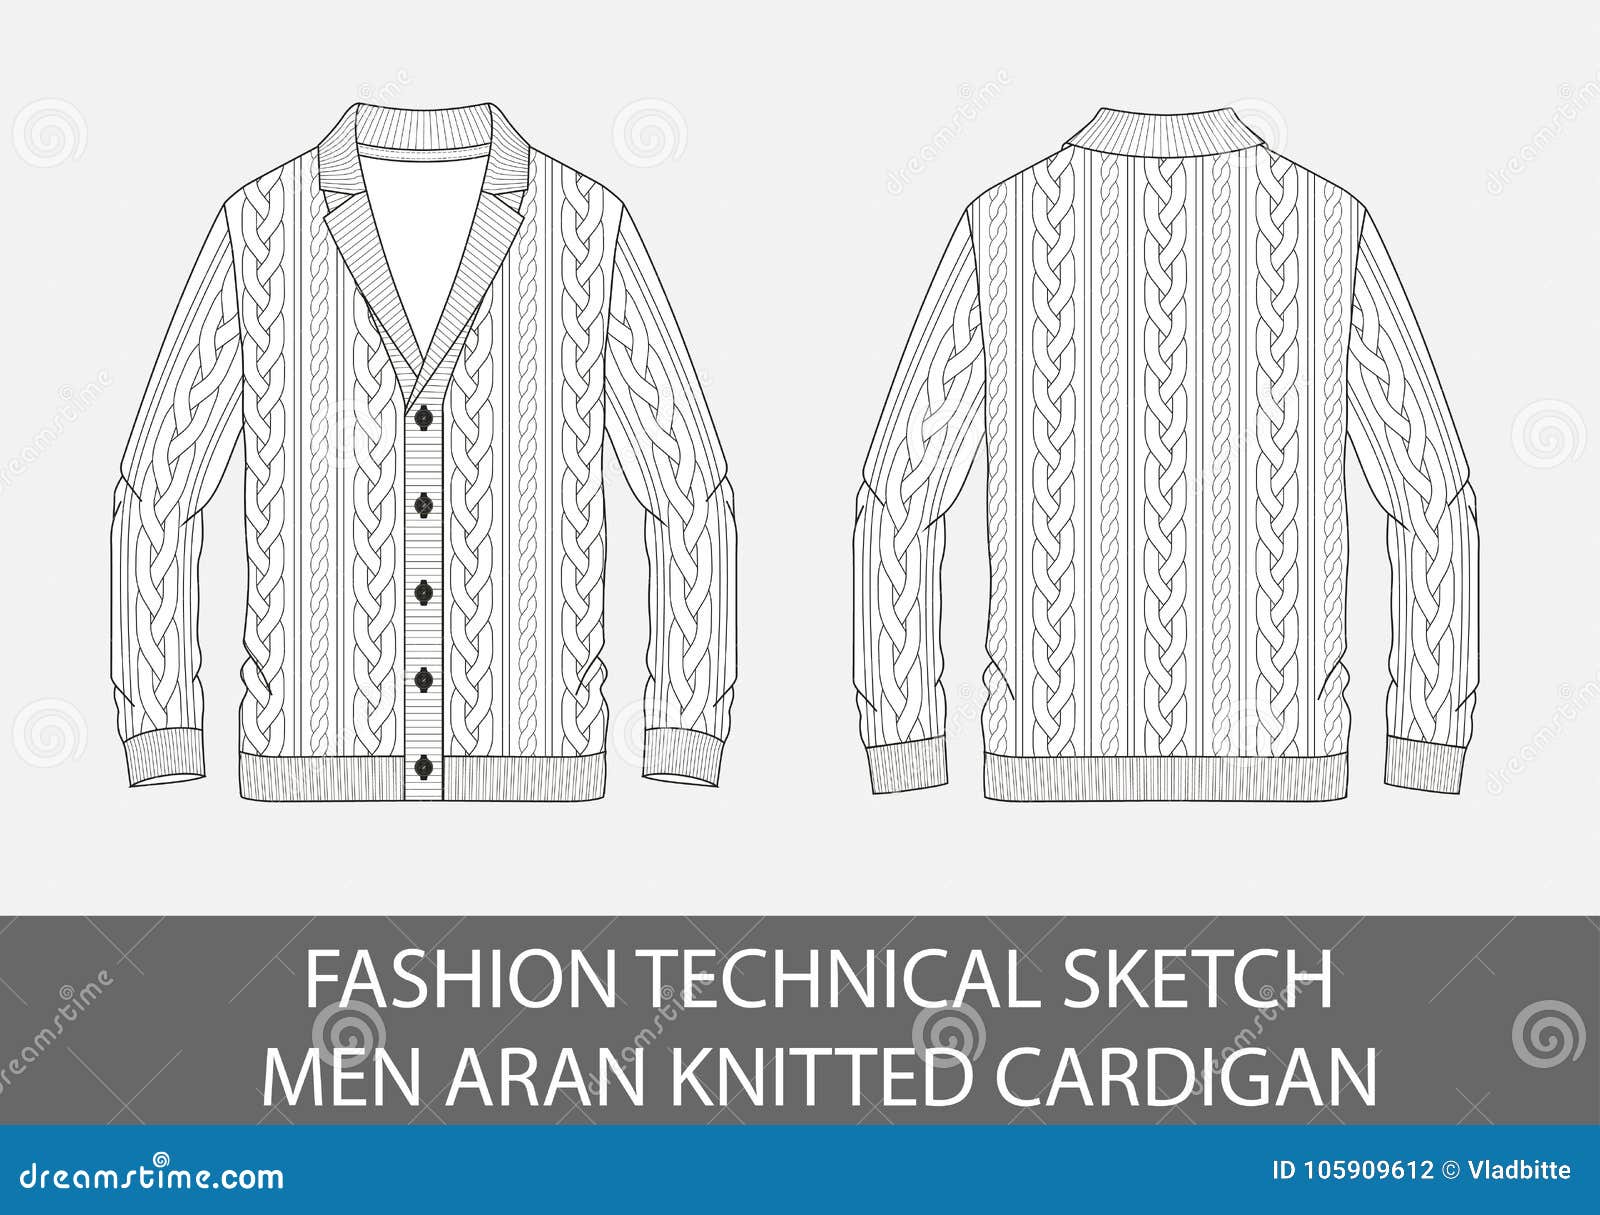 fashion technical sketch men knit aran single-breasted cardigan